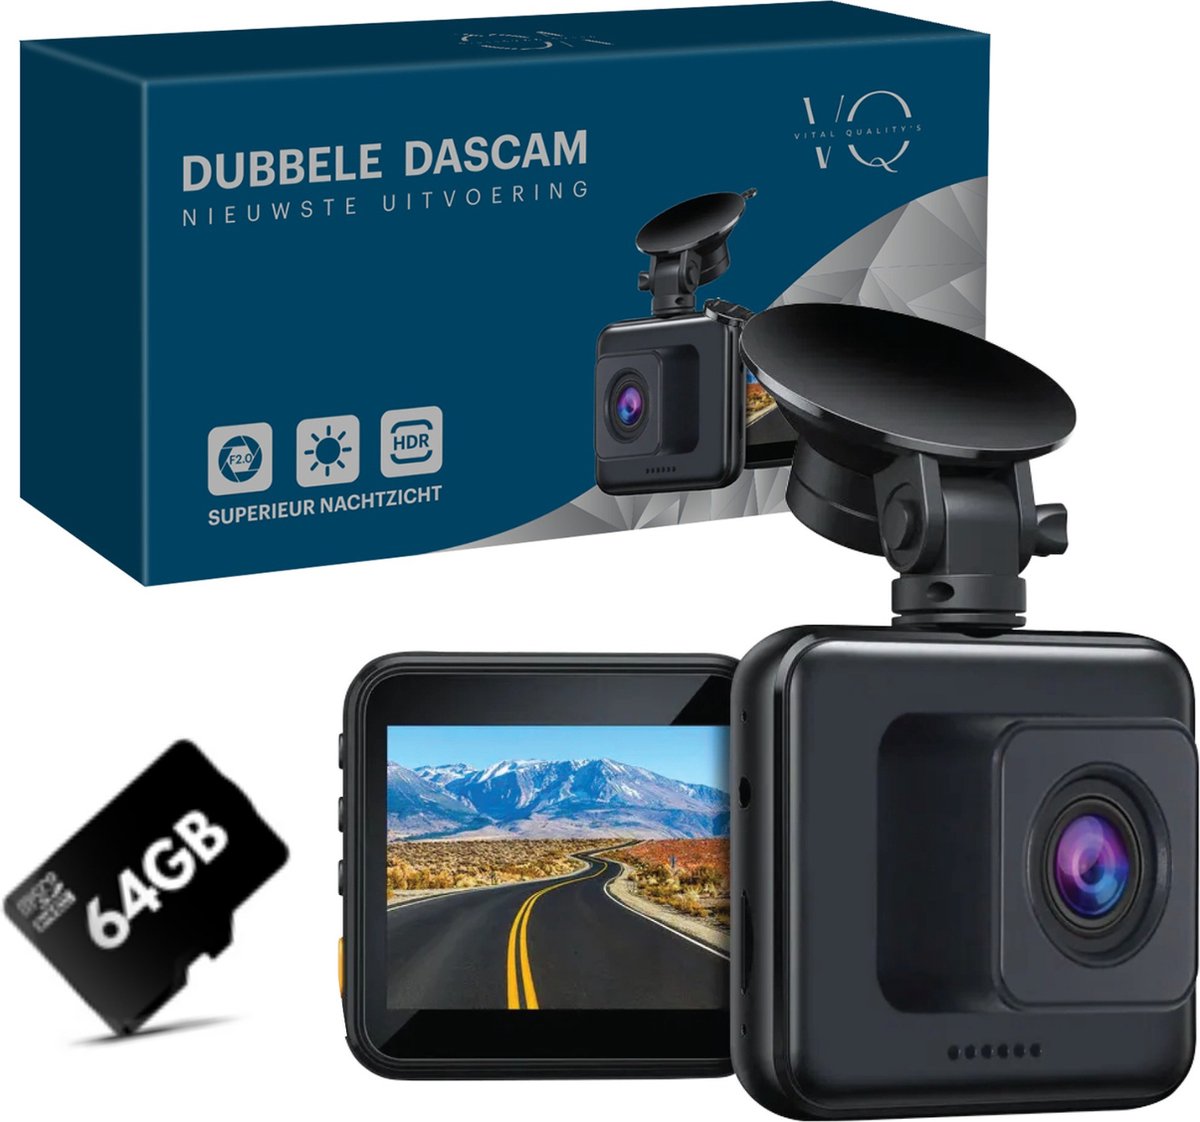 Dual Dashcam Voor Auto Camera Voor en Achter 1080p Full HD - Incl. 64GB SD-kaart - Nachtvisie